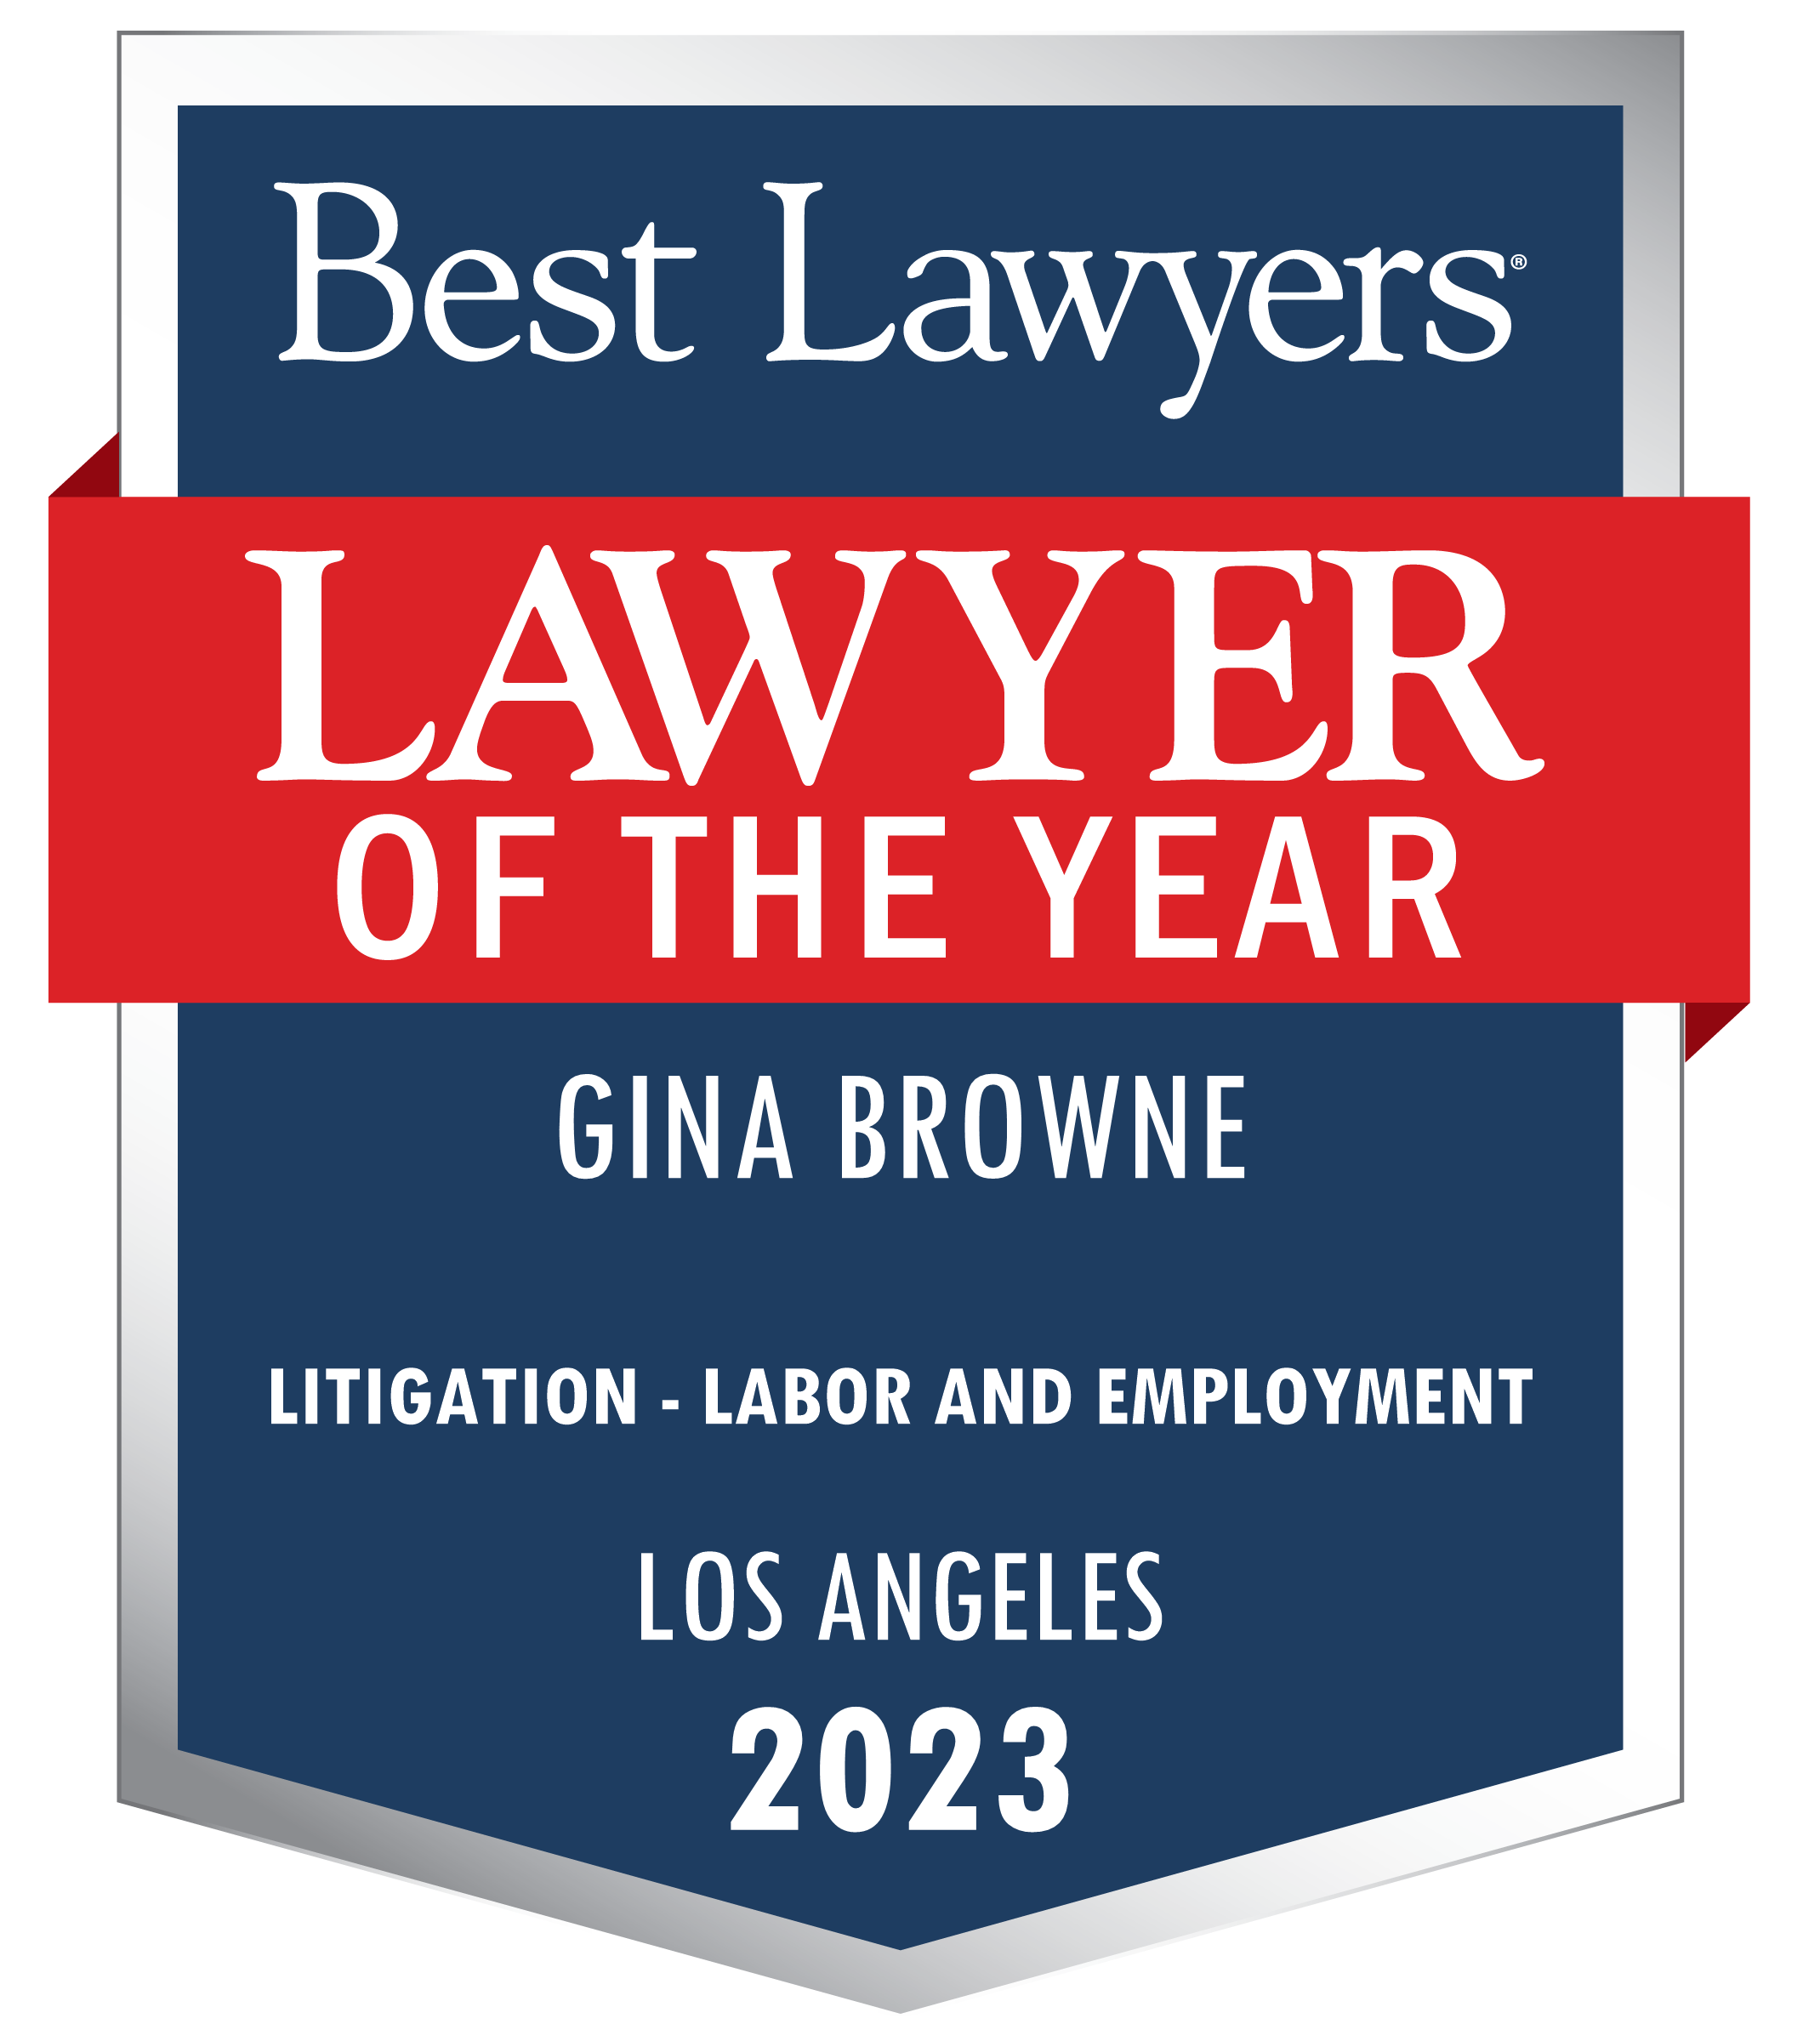 Loyalton Lawyer For Employment thumbnail